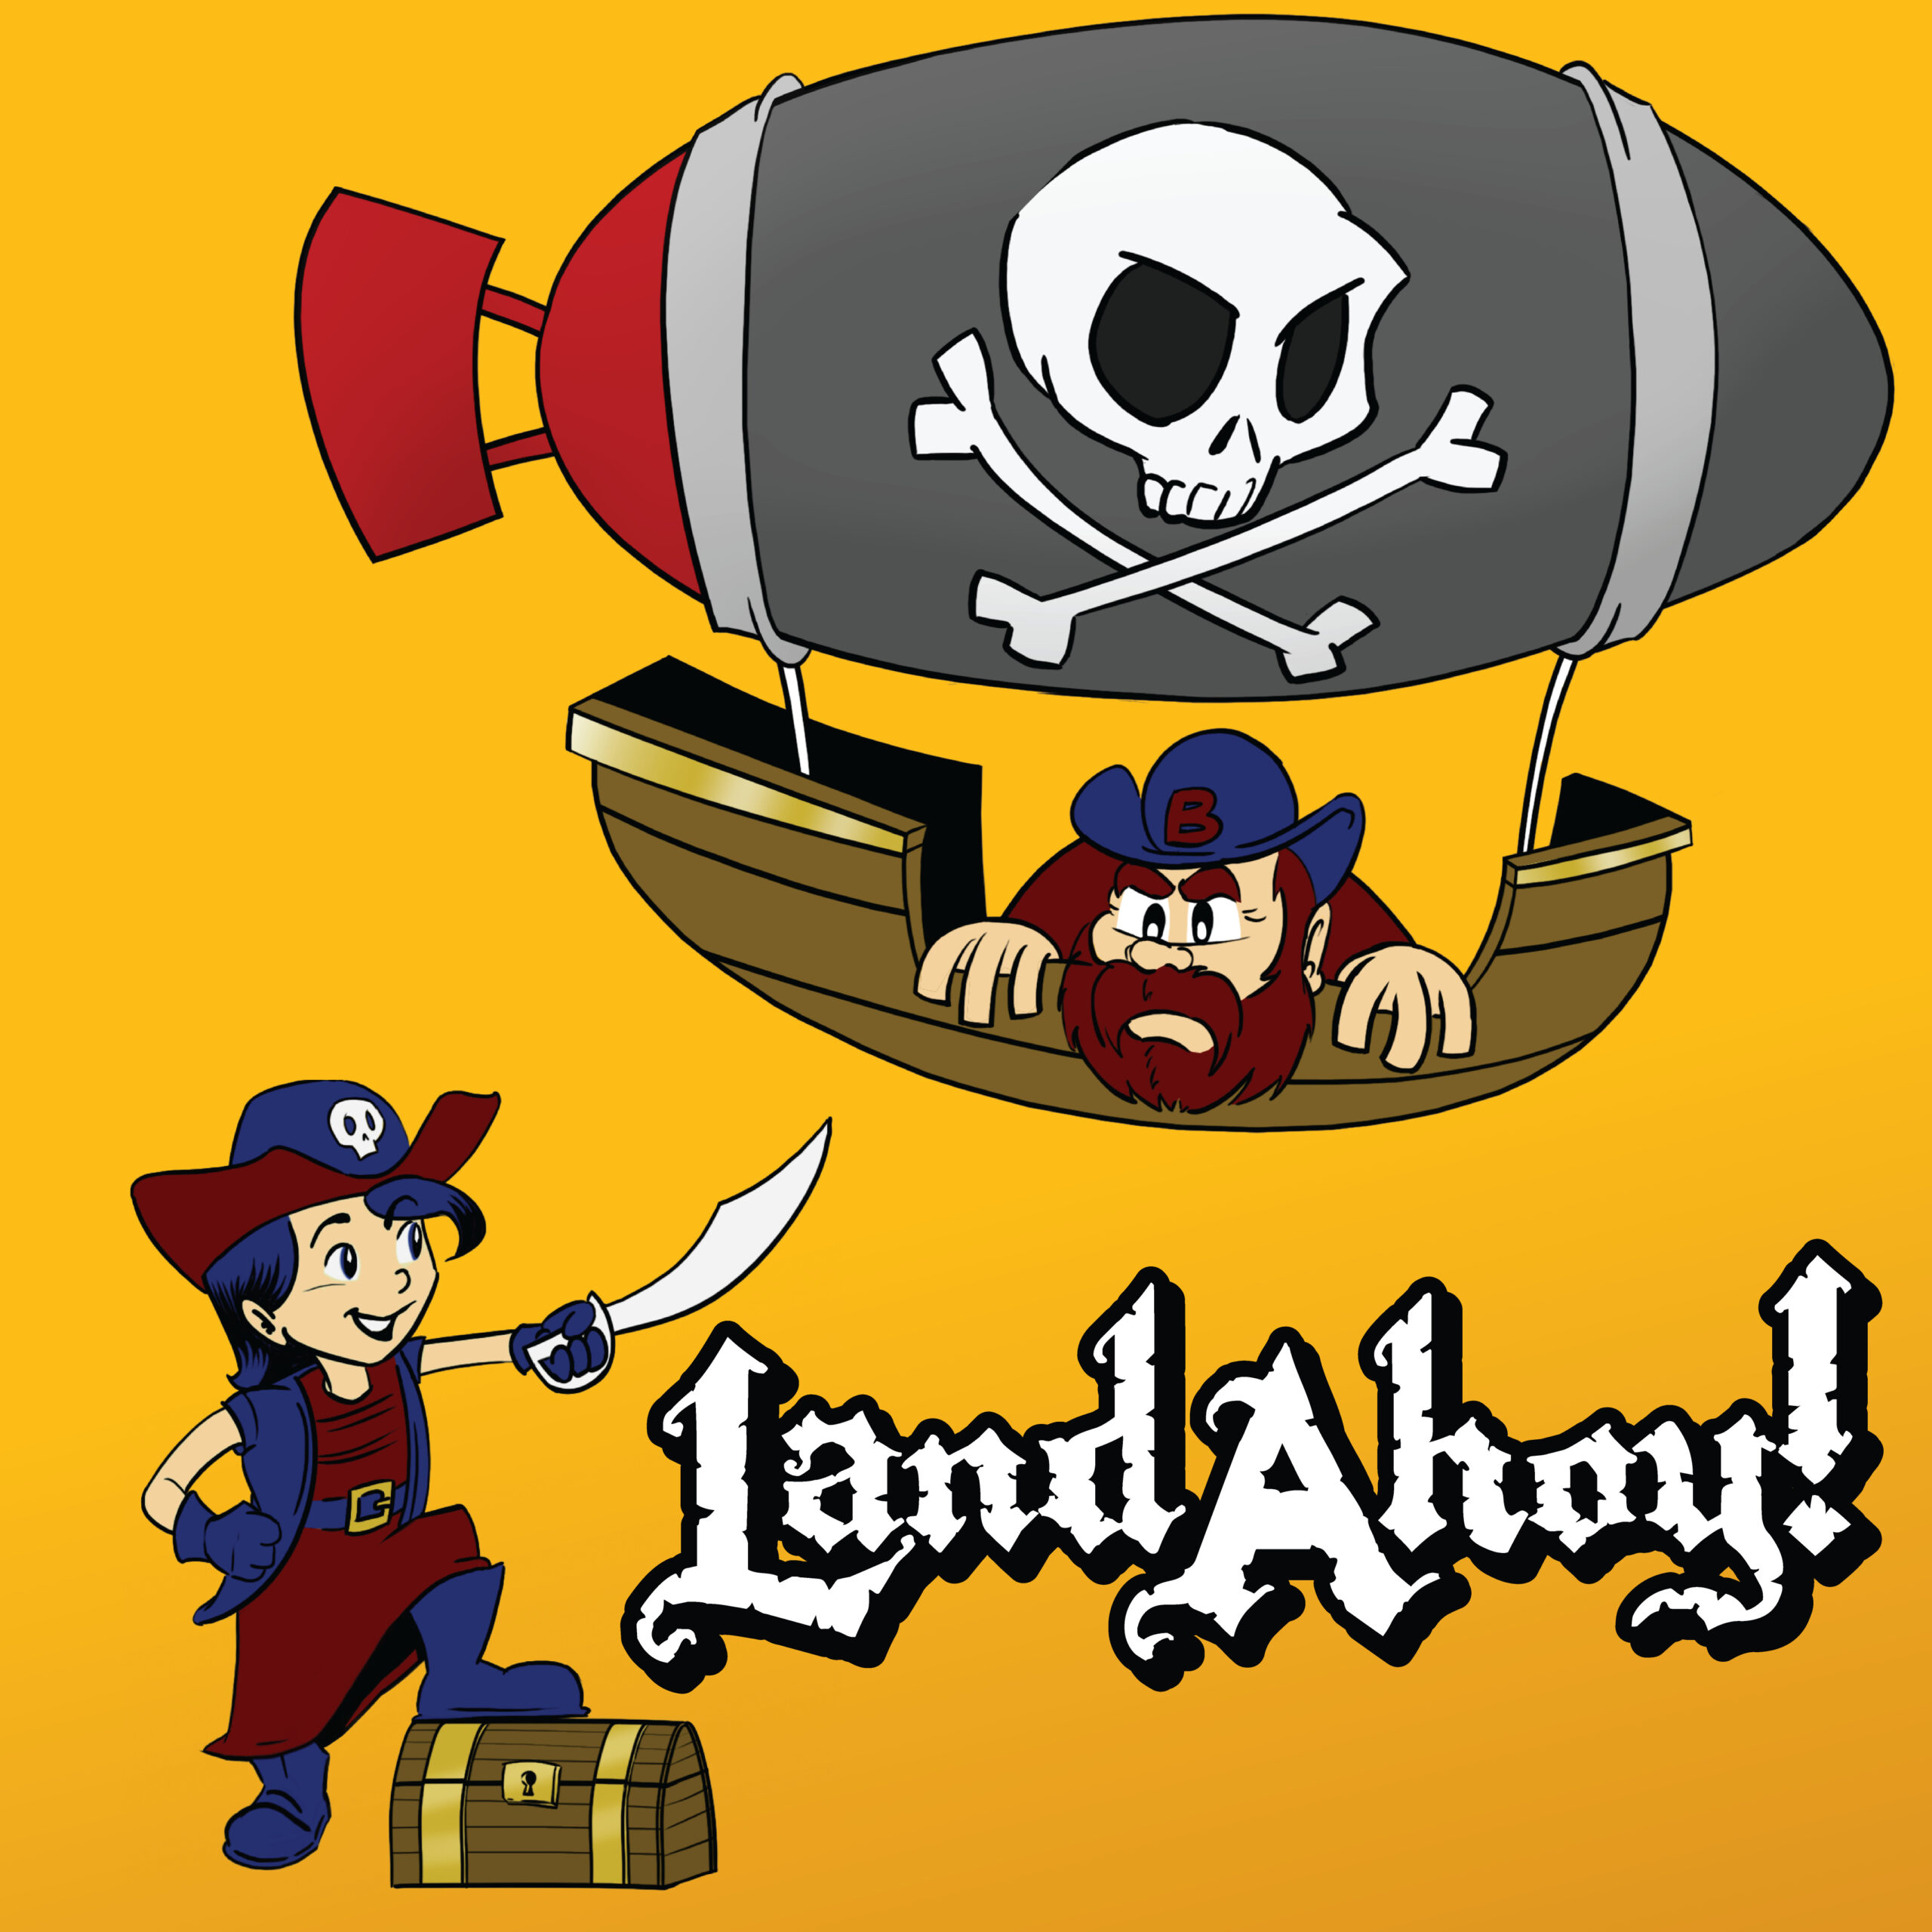 Land Ahoy!